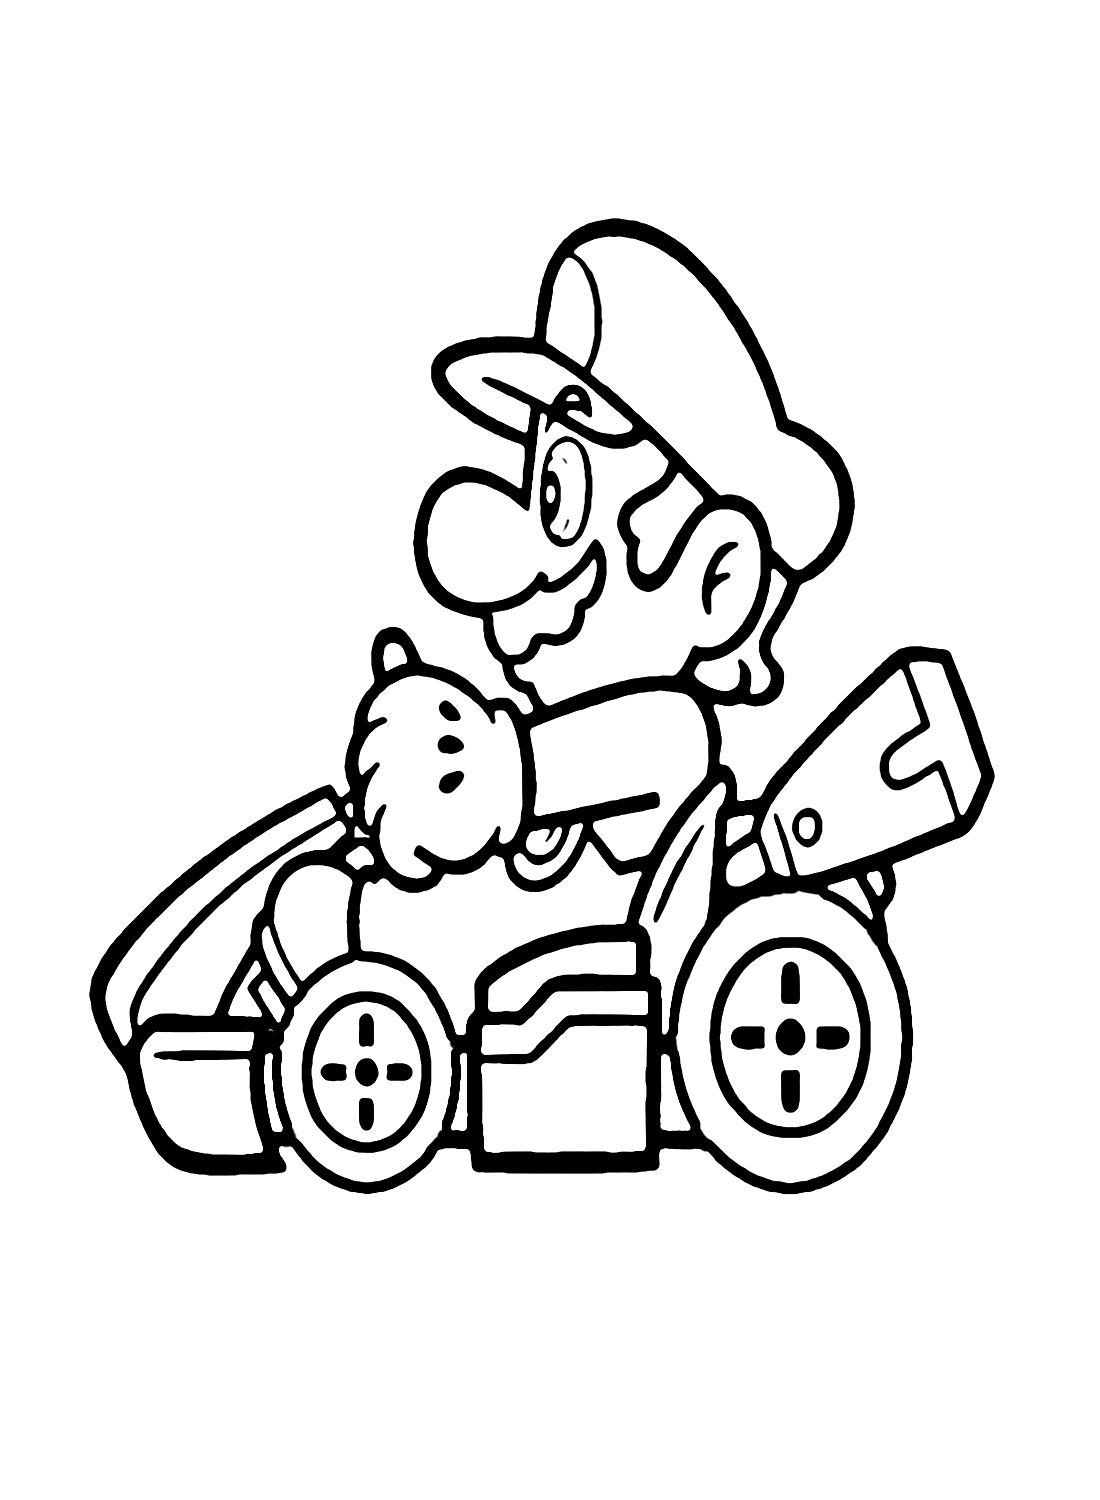 Mario in Mario Kart van Mario Kart